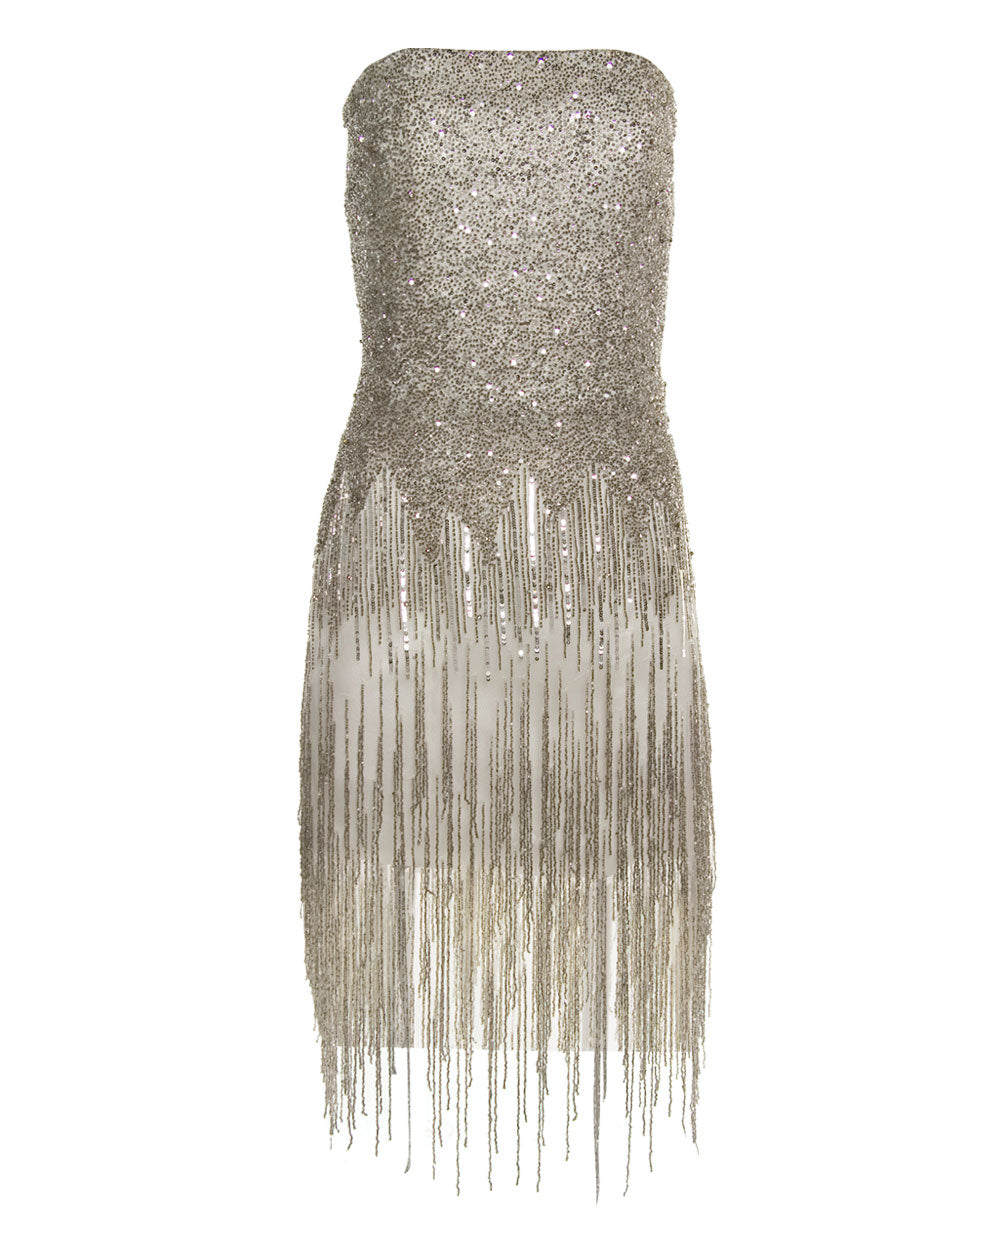 Silver Fringe Cocktail Dress